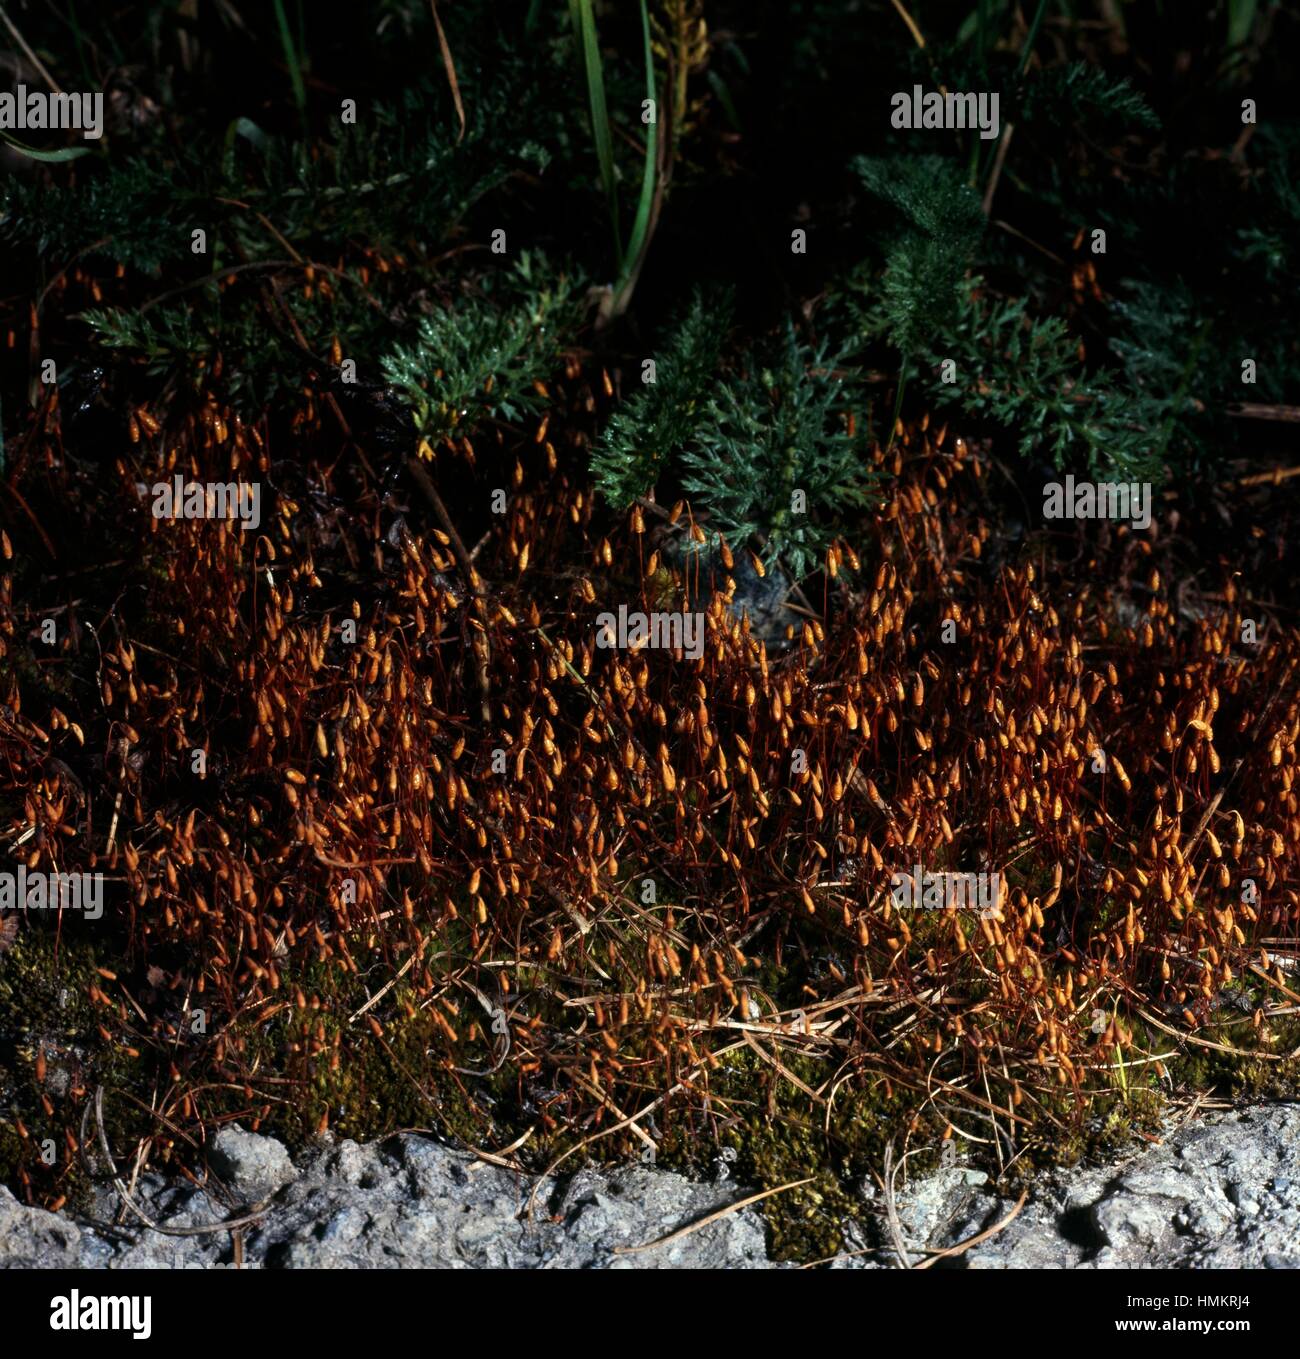 Dry Calcareous Bryum Moss (Bryum caespiticium), Bryaceae. Stock Photo